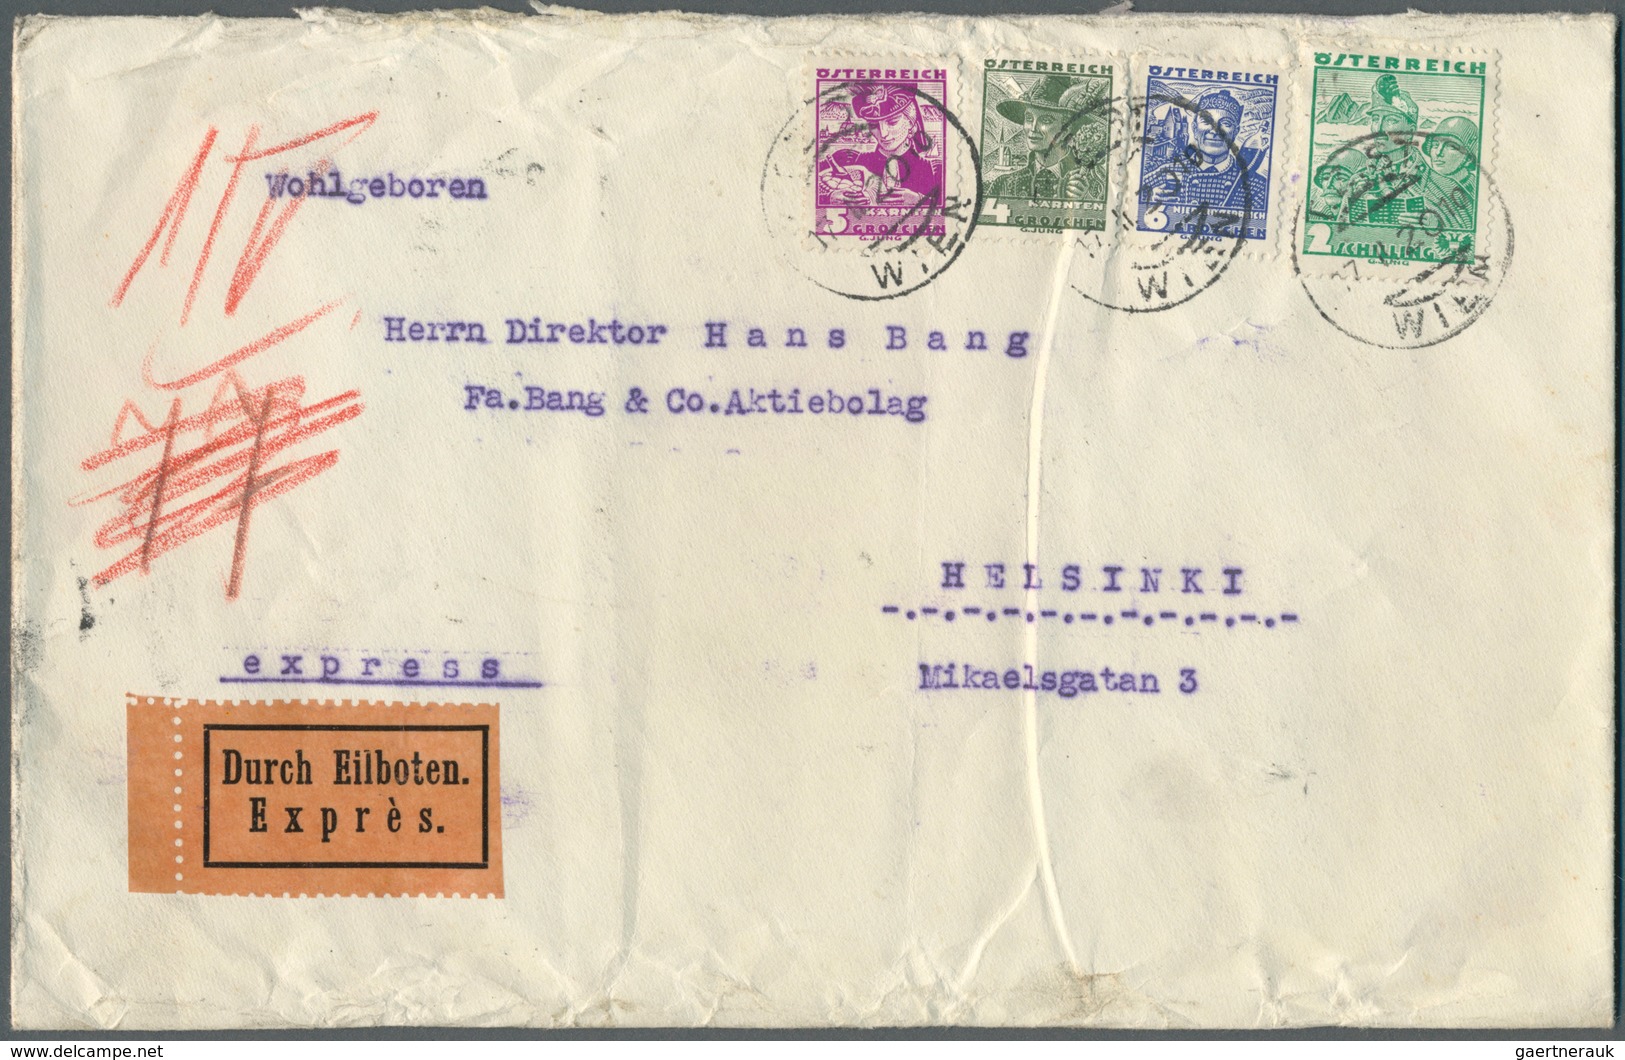 Österreich: 1925/1938 (ca.), inter. Bestand mit ca. 155 Briefen ab Schilling-Währung dabei viele bes